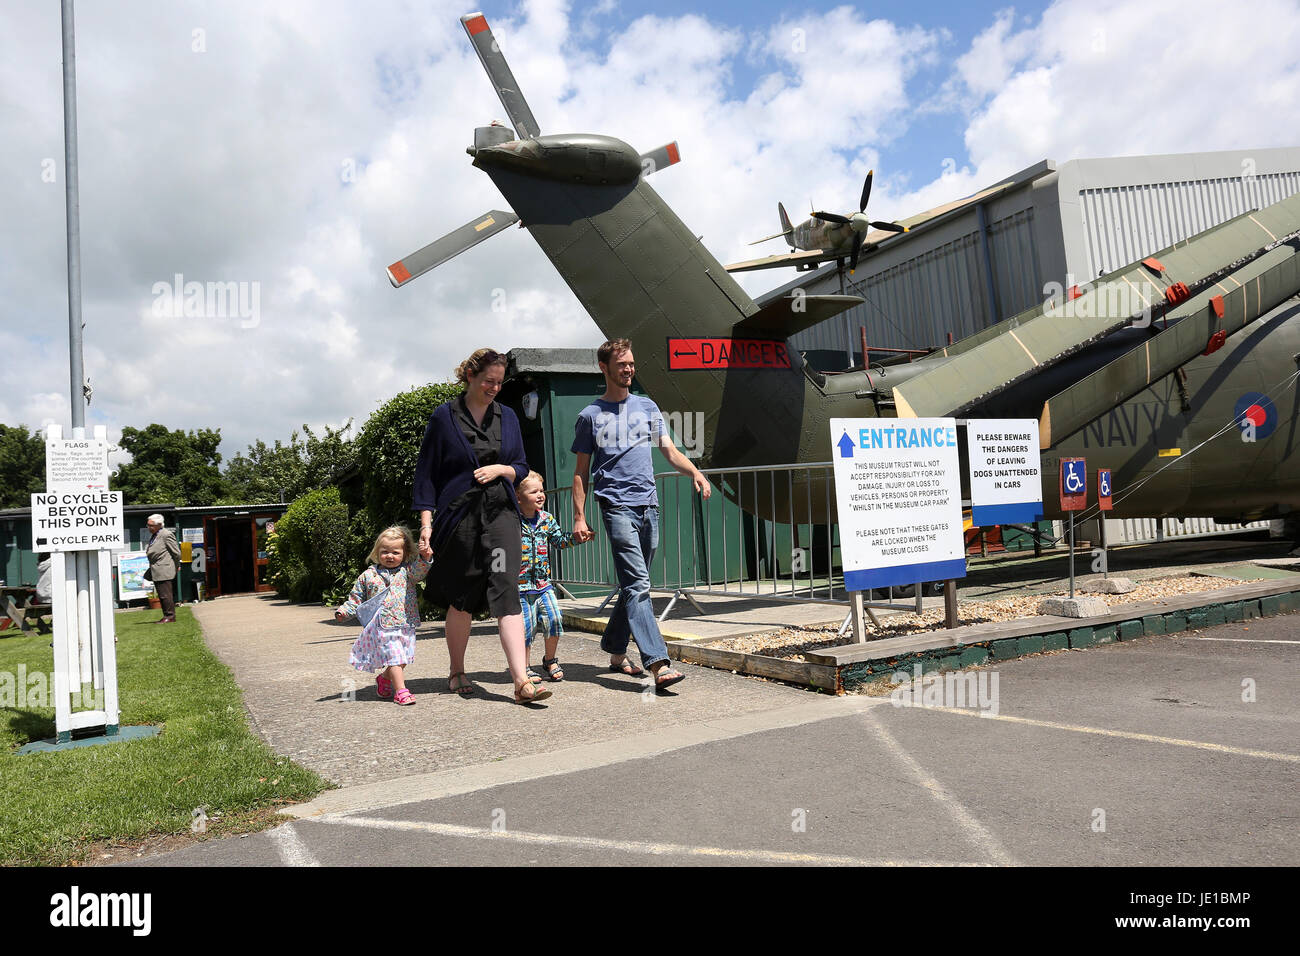 Vues générales de Tangmere Military Aviation Museum, Tangmere, près de Chichester, West Sussex, UK. Banque D'Images